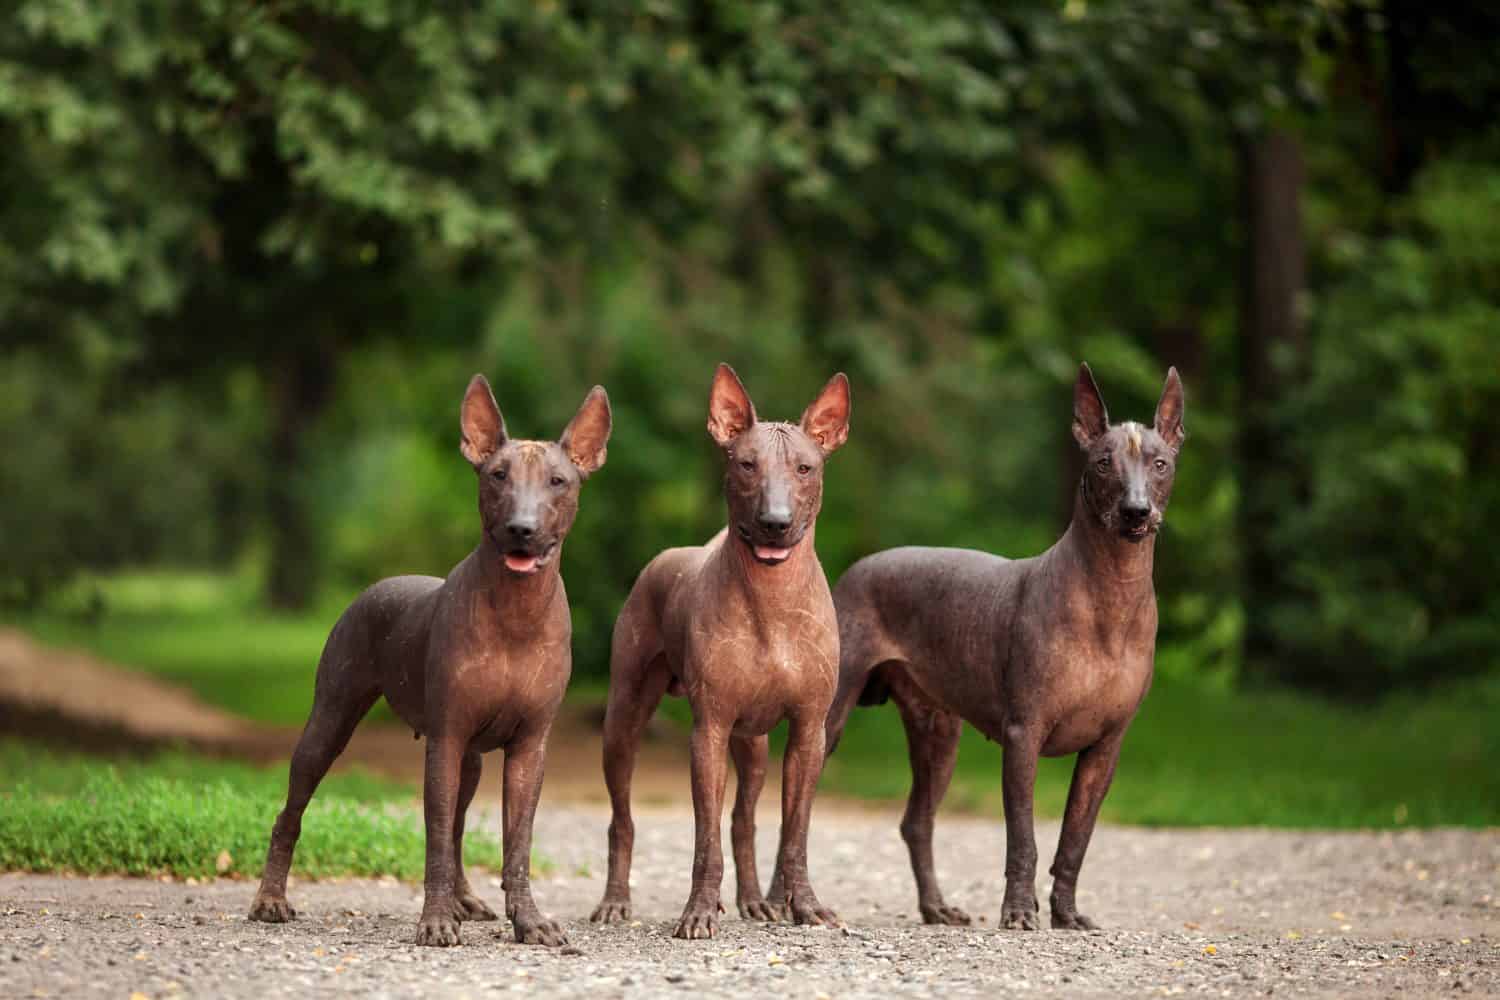 Ritratto orizzontale di tre cani di razza Xoloitzcuintli, cani messicani glabri di colore nero di dimensioni standard, in piedi all'aperto a terra con erba verde e alberi sullo sfondo durante la giornata estiva